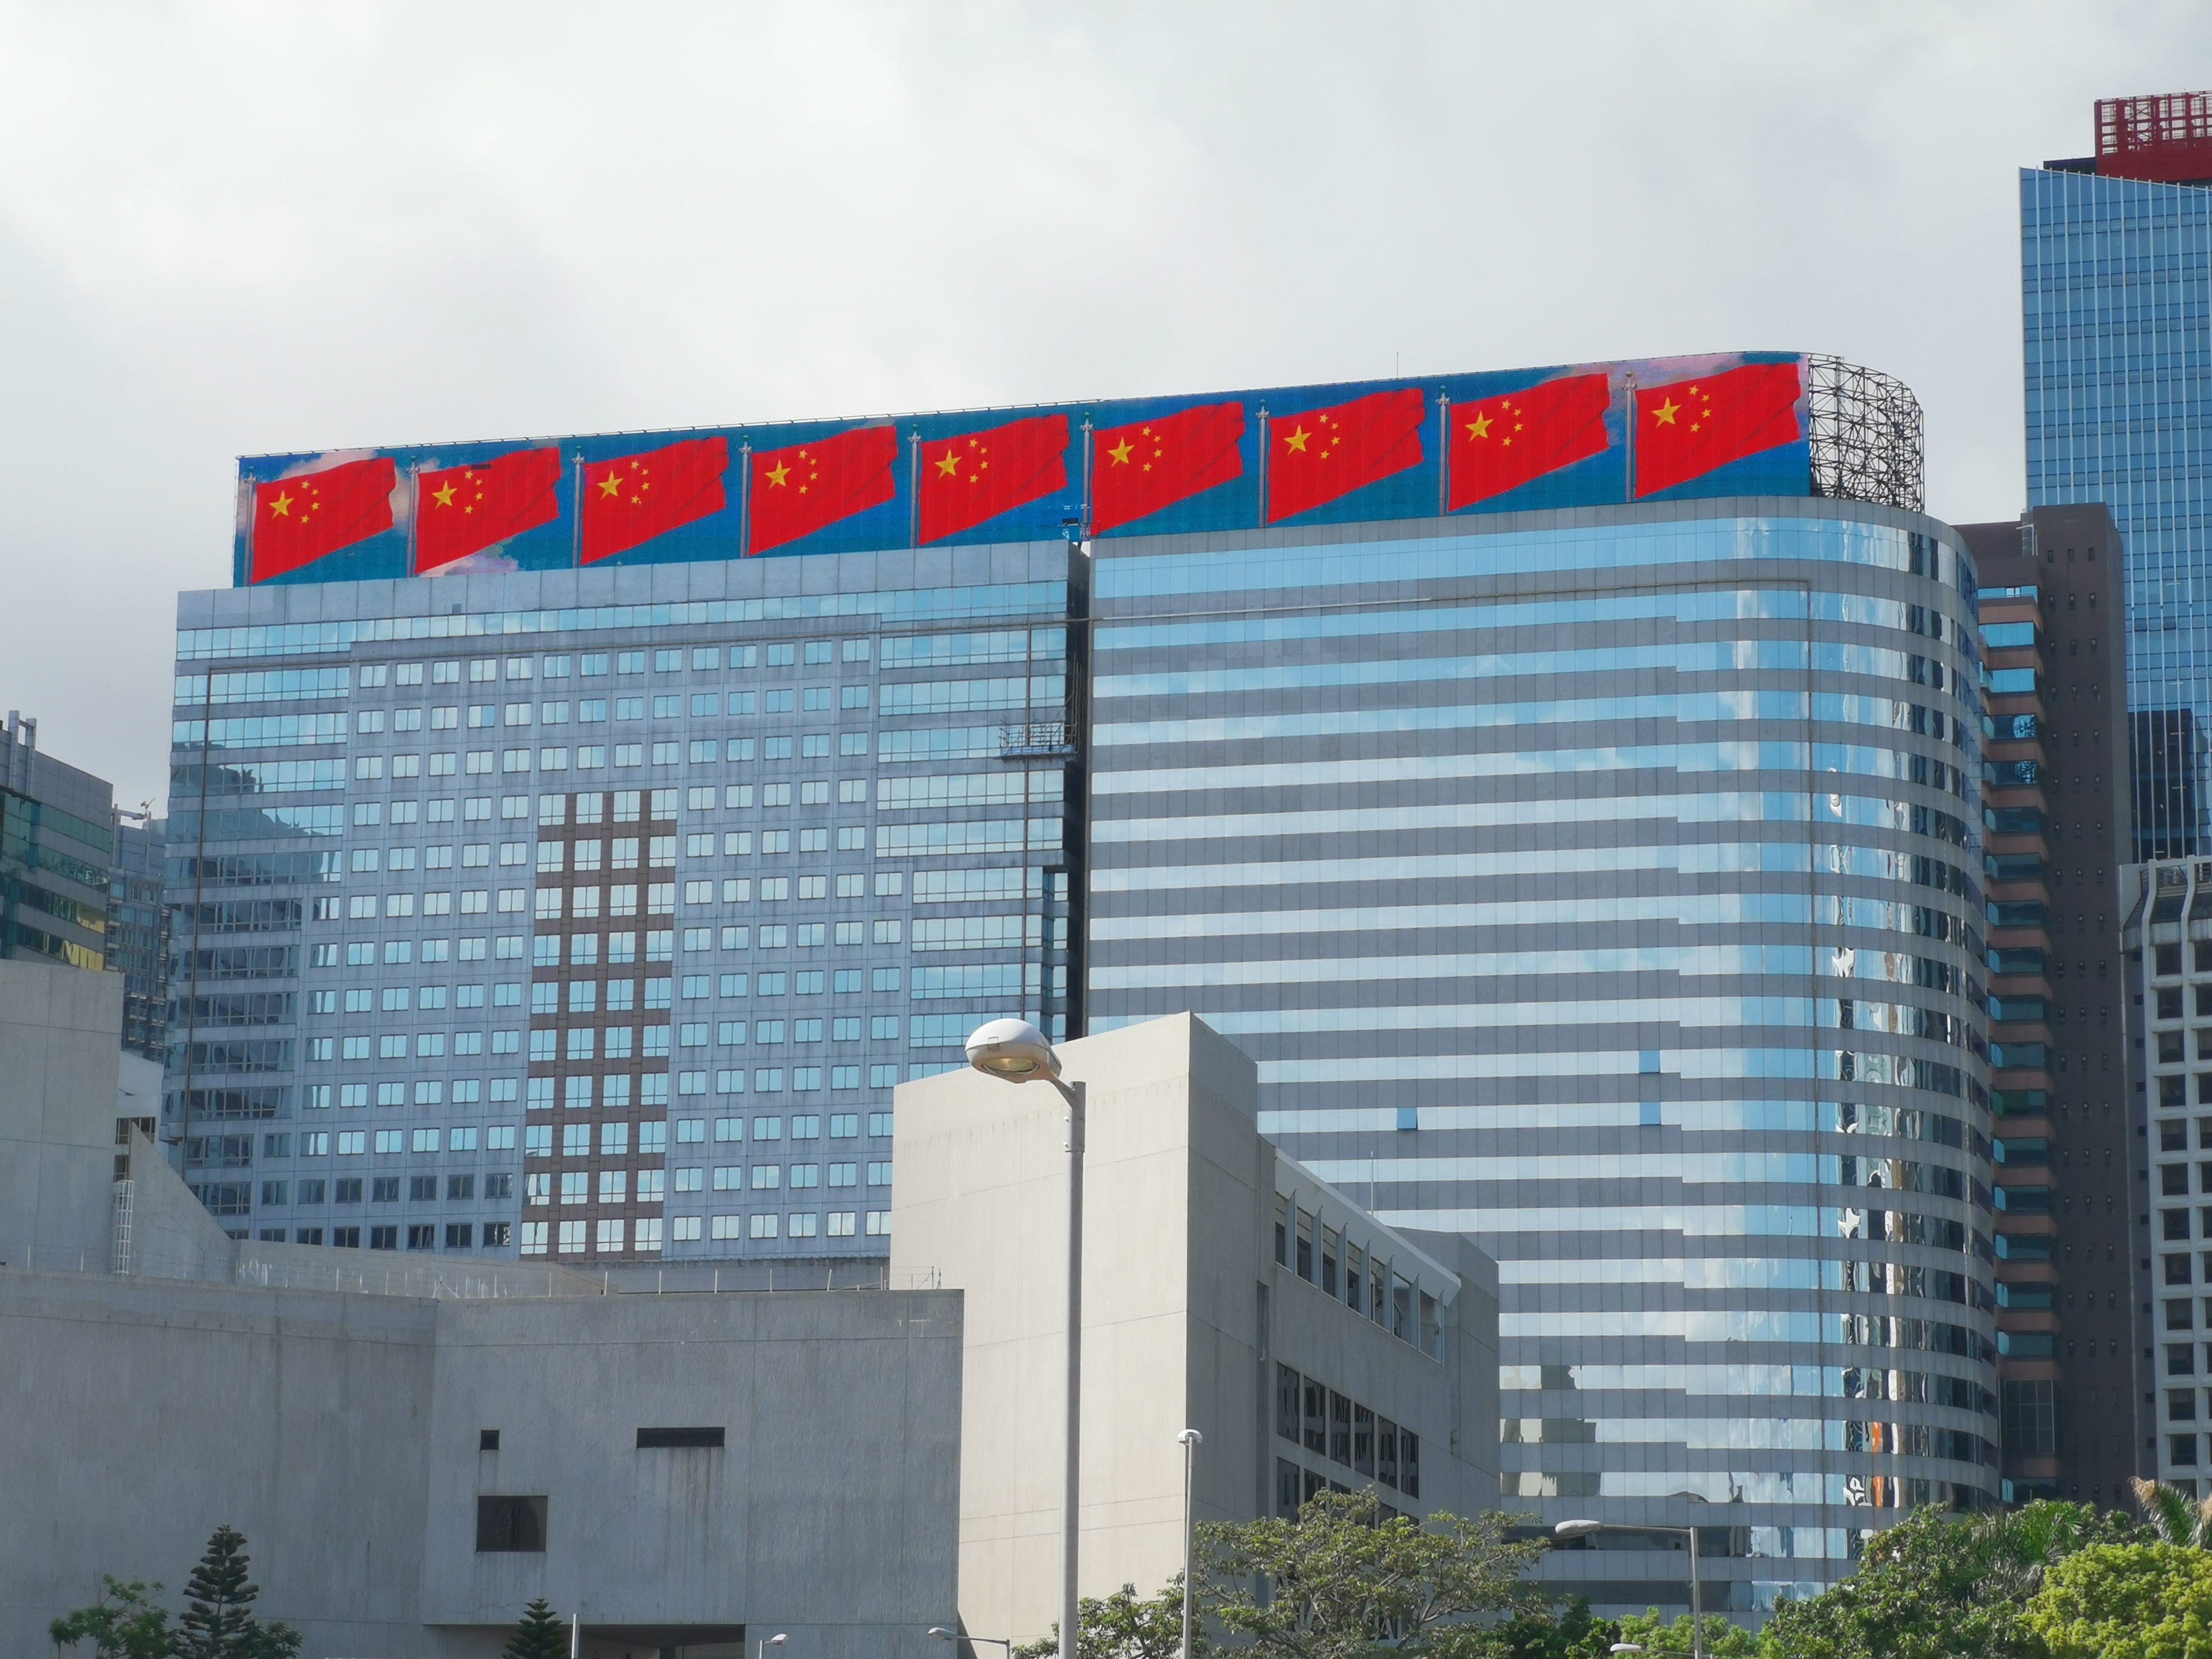 恒大香港总部大楼五星红旗飘扬,传递爱国正能量